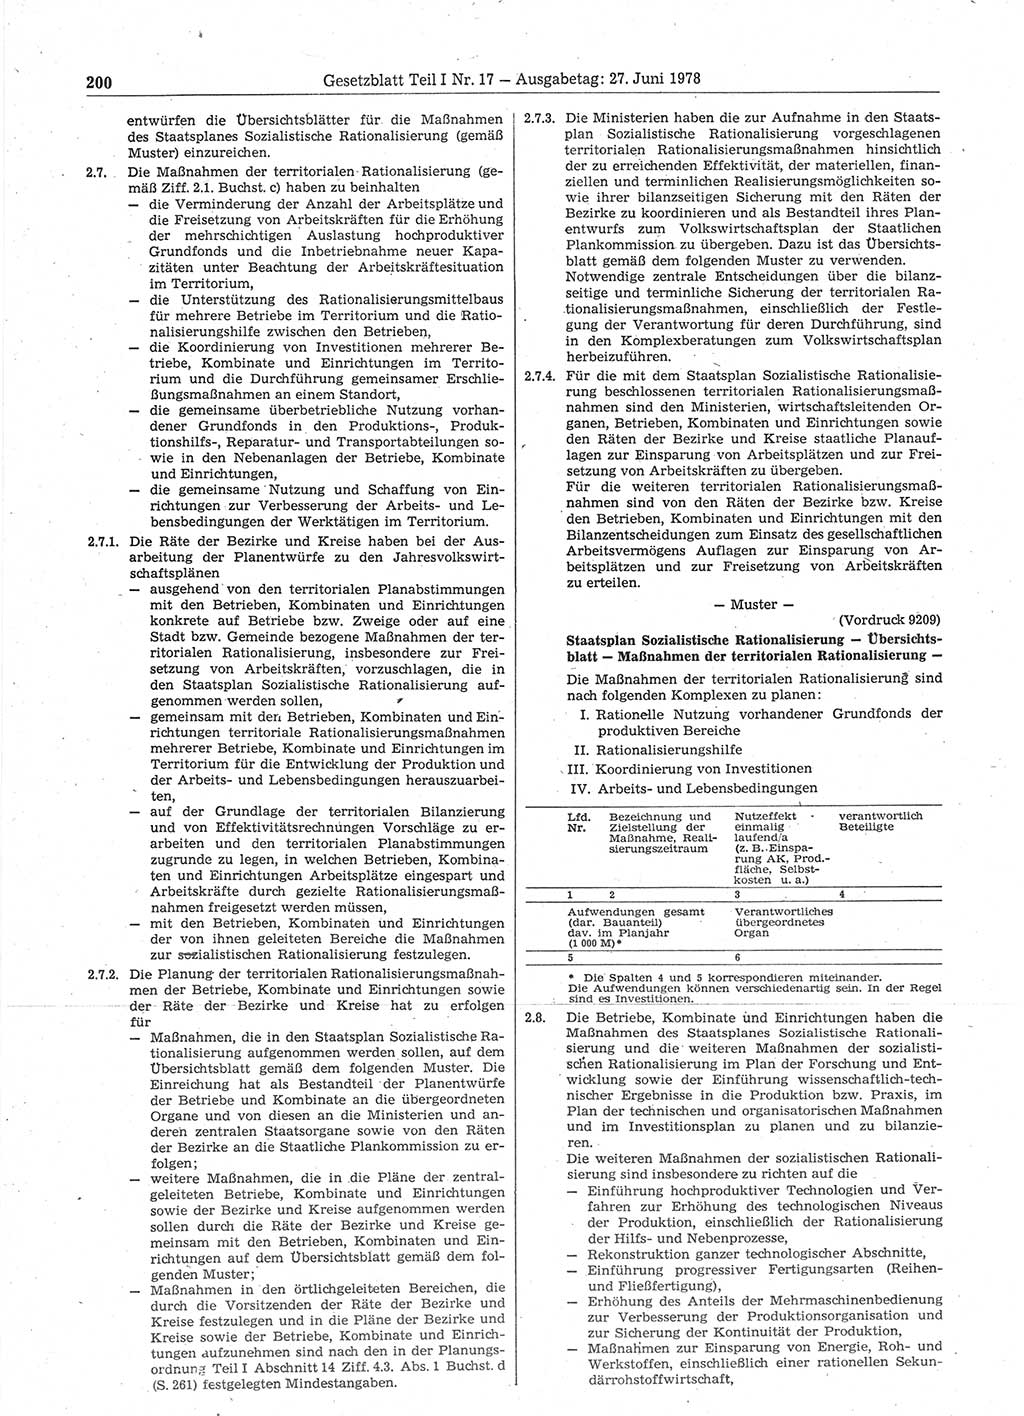 Gesetzblatt (GBl.) der Deutschen Demokratischen Republik (DDR) Teil Ⅰ 1978, Seite 200 (GBl. DDR Ⅰ 1978, S. 200)